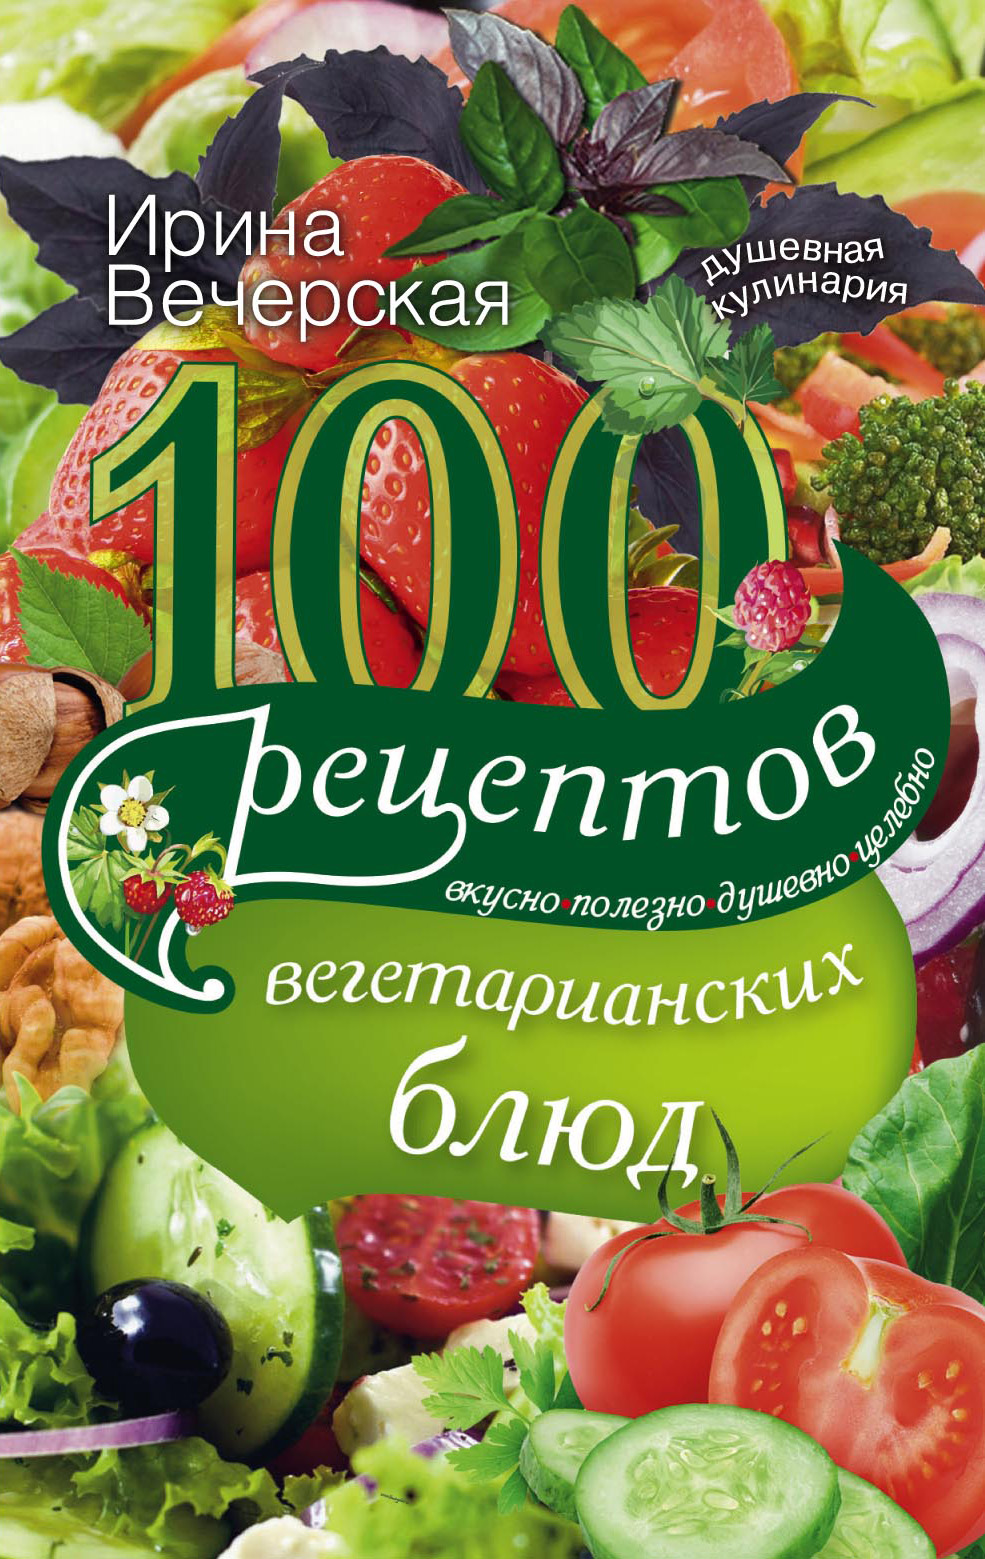 100рецептов вегетарианских блюд. Вкусно, полезно, душевно, целебно